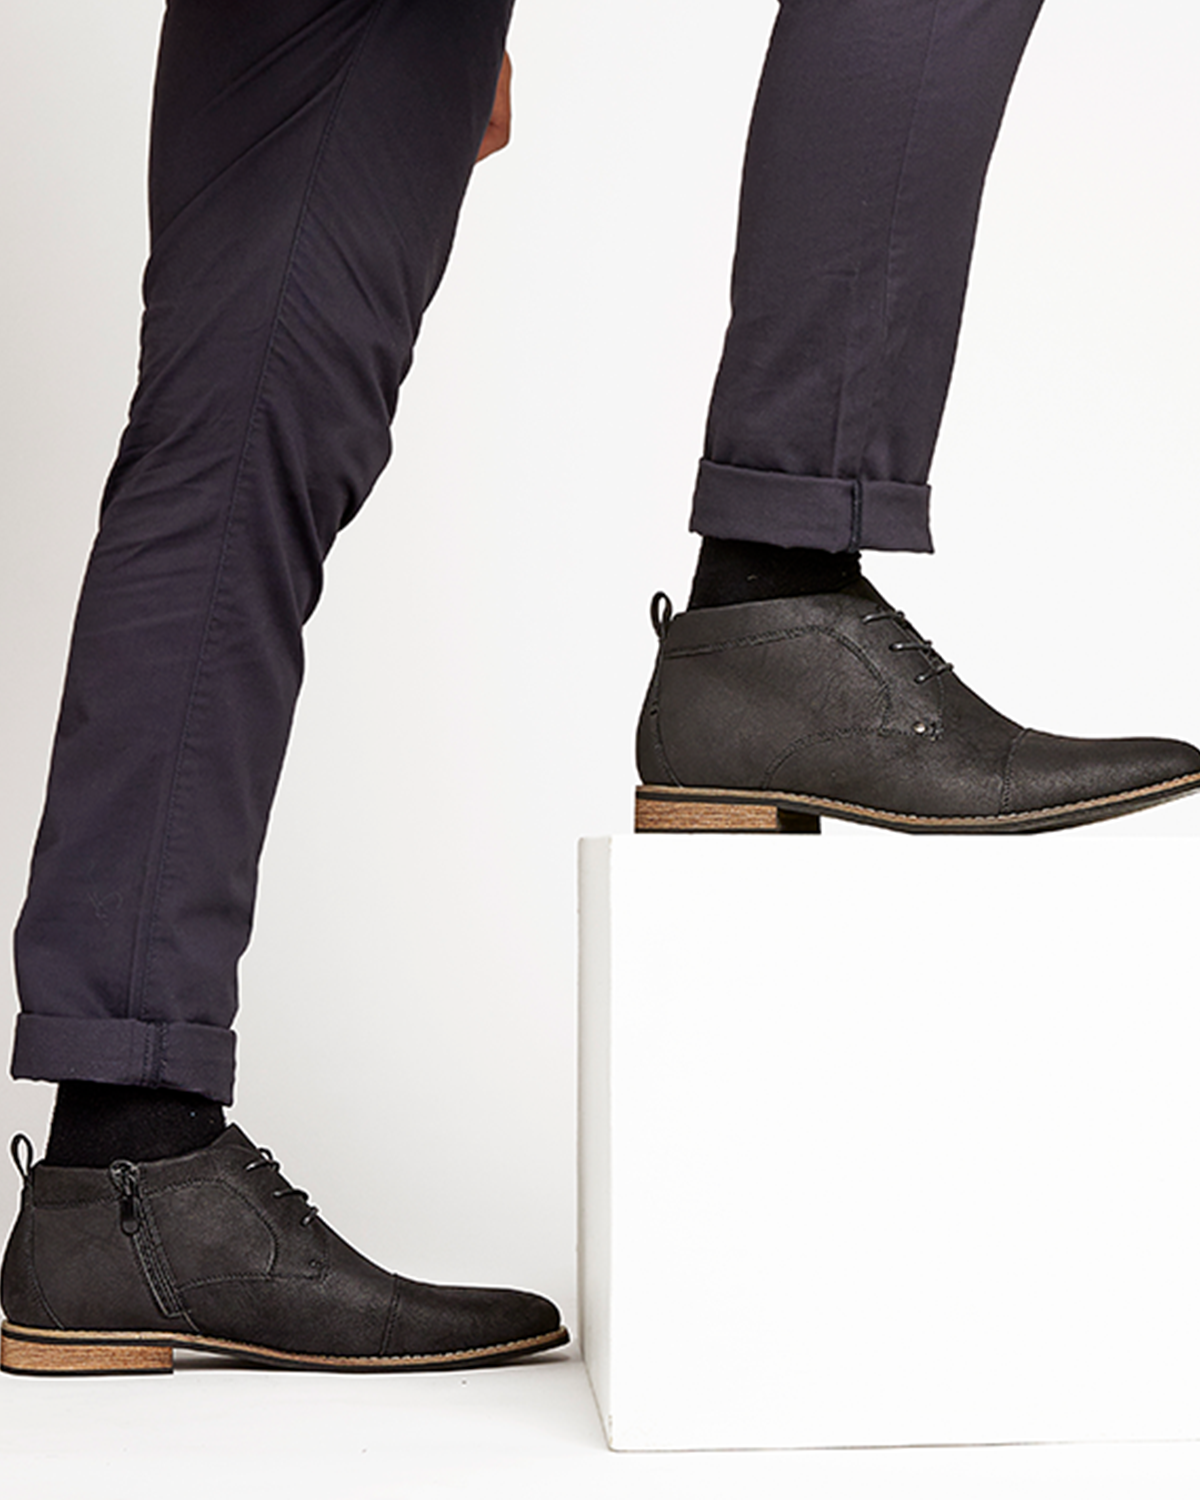 Uncut Shoes McQuillan Black | Men's Boot | Desert Boot | Lace Up